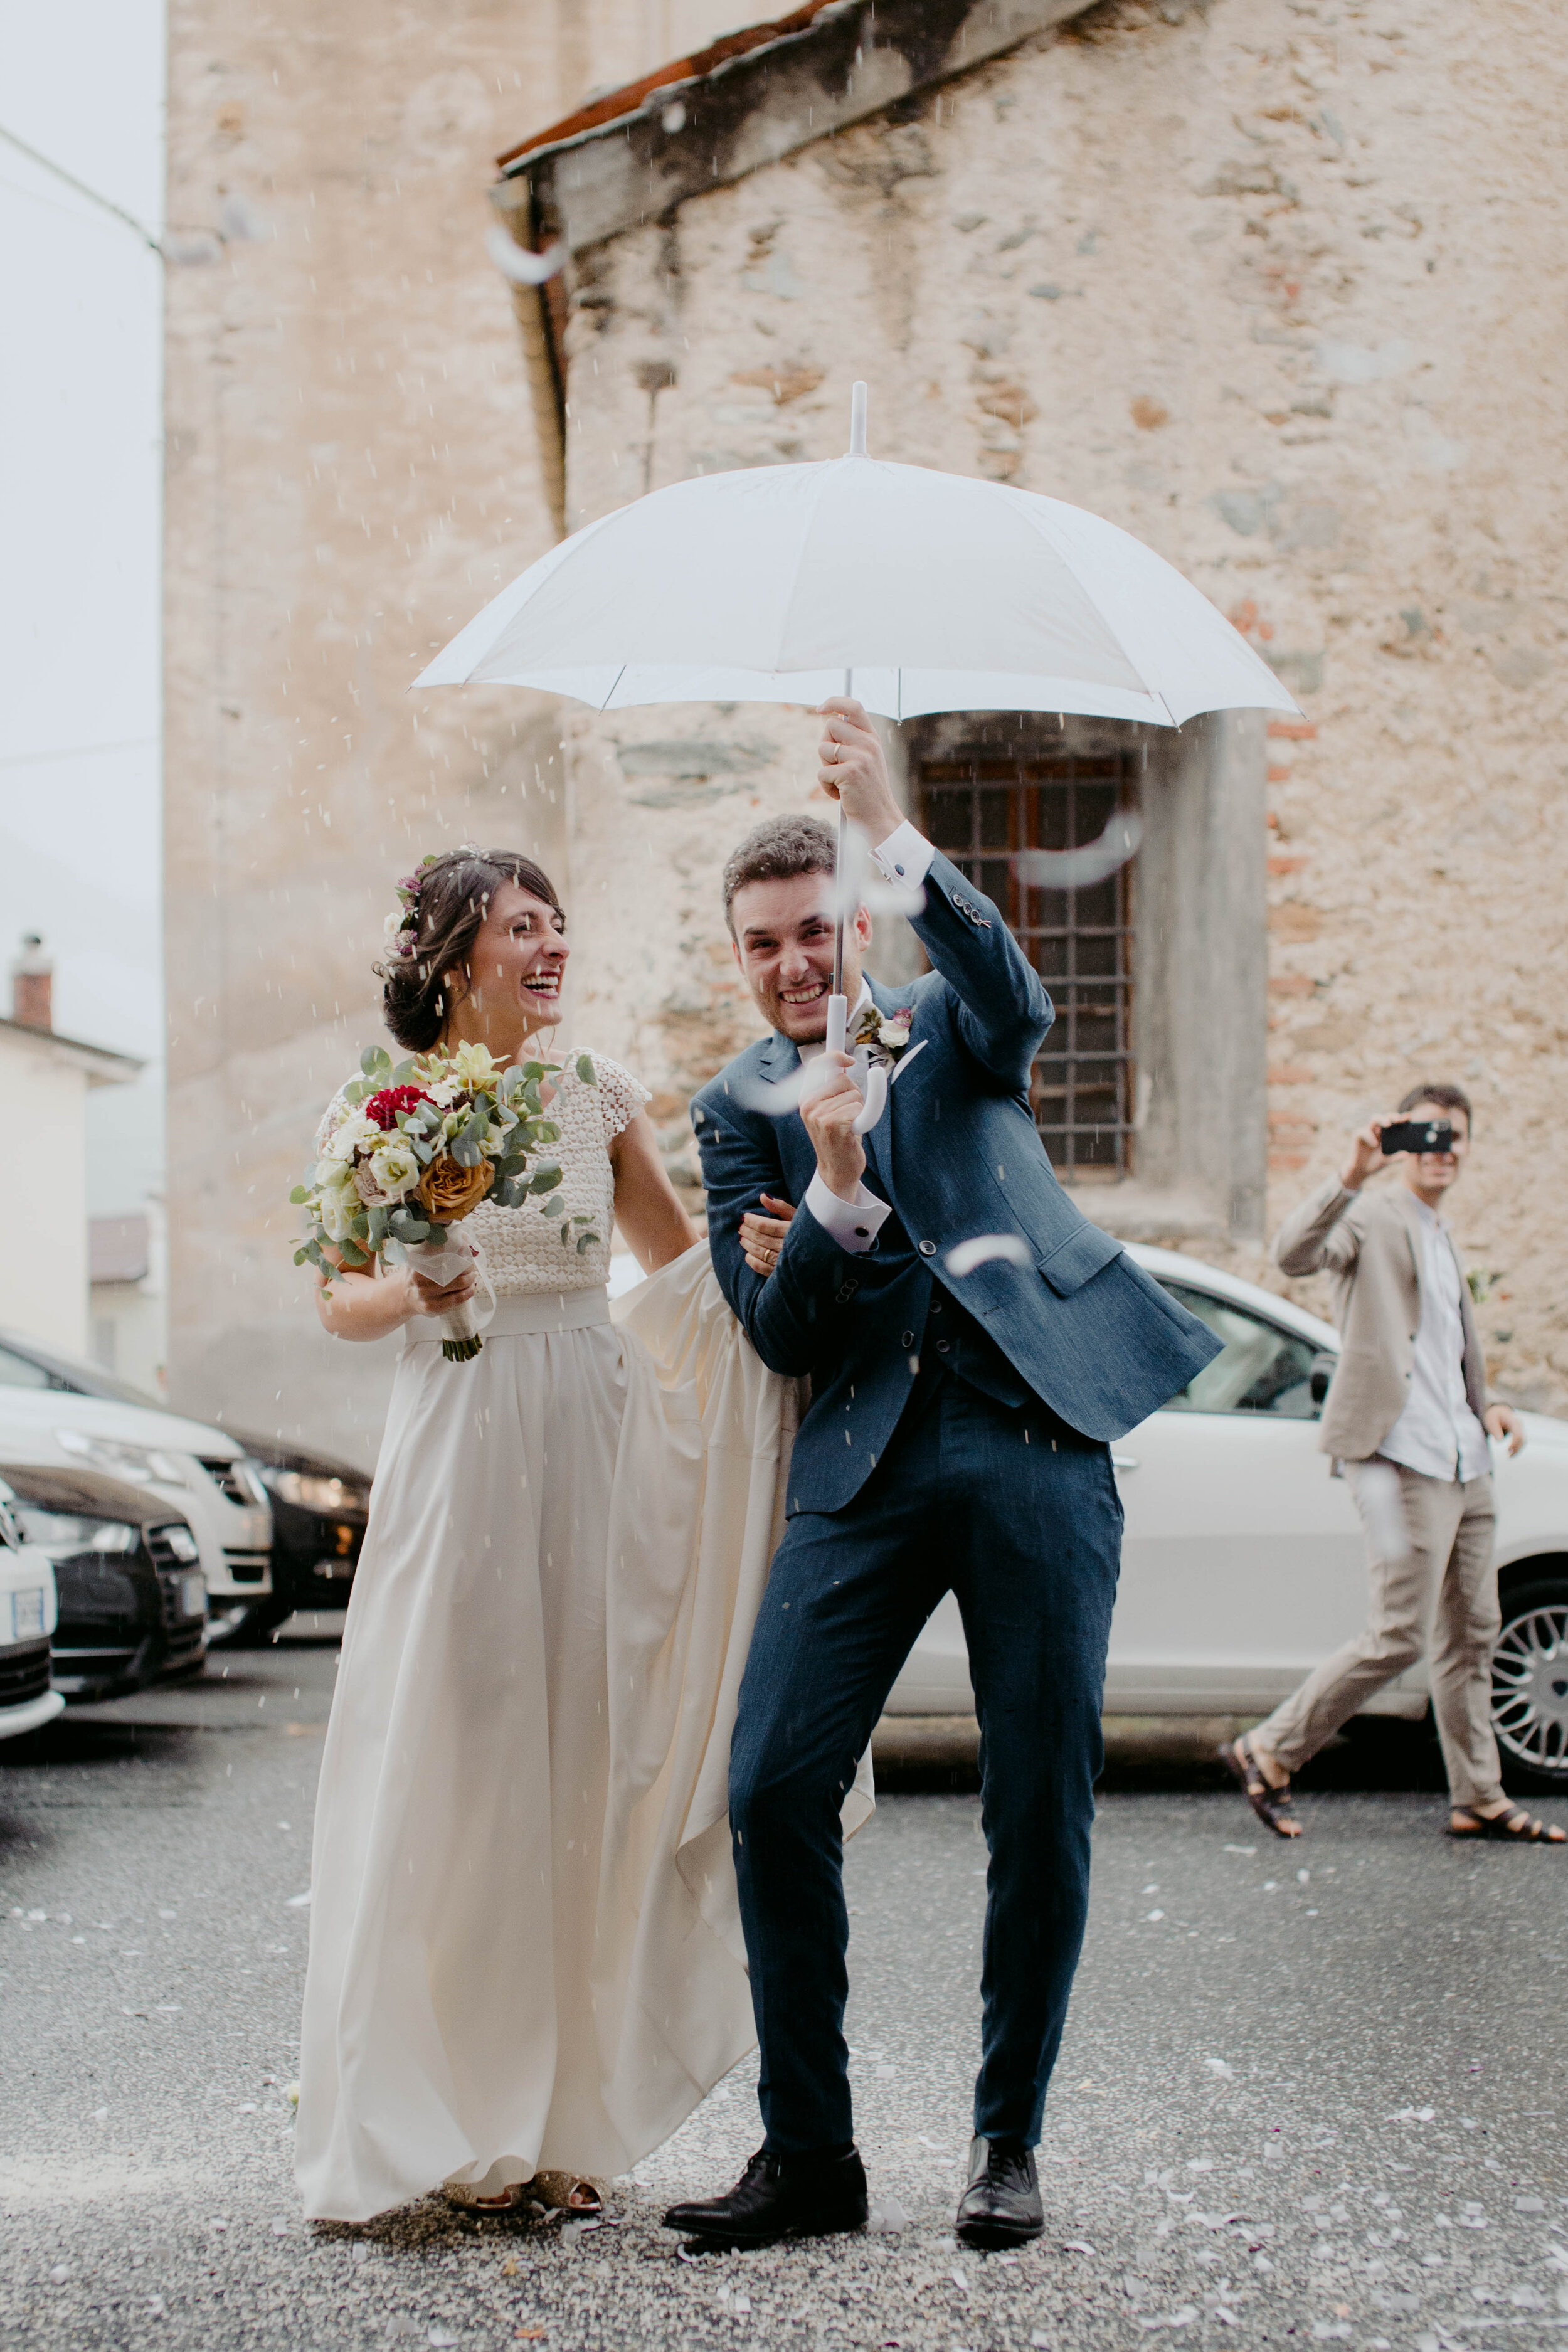 051 - Matrimonio in provincia di Cuneo - Miriam Callegari Fotografa.JPG